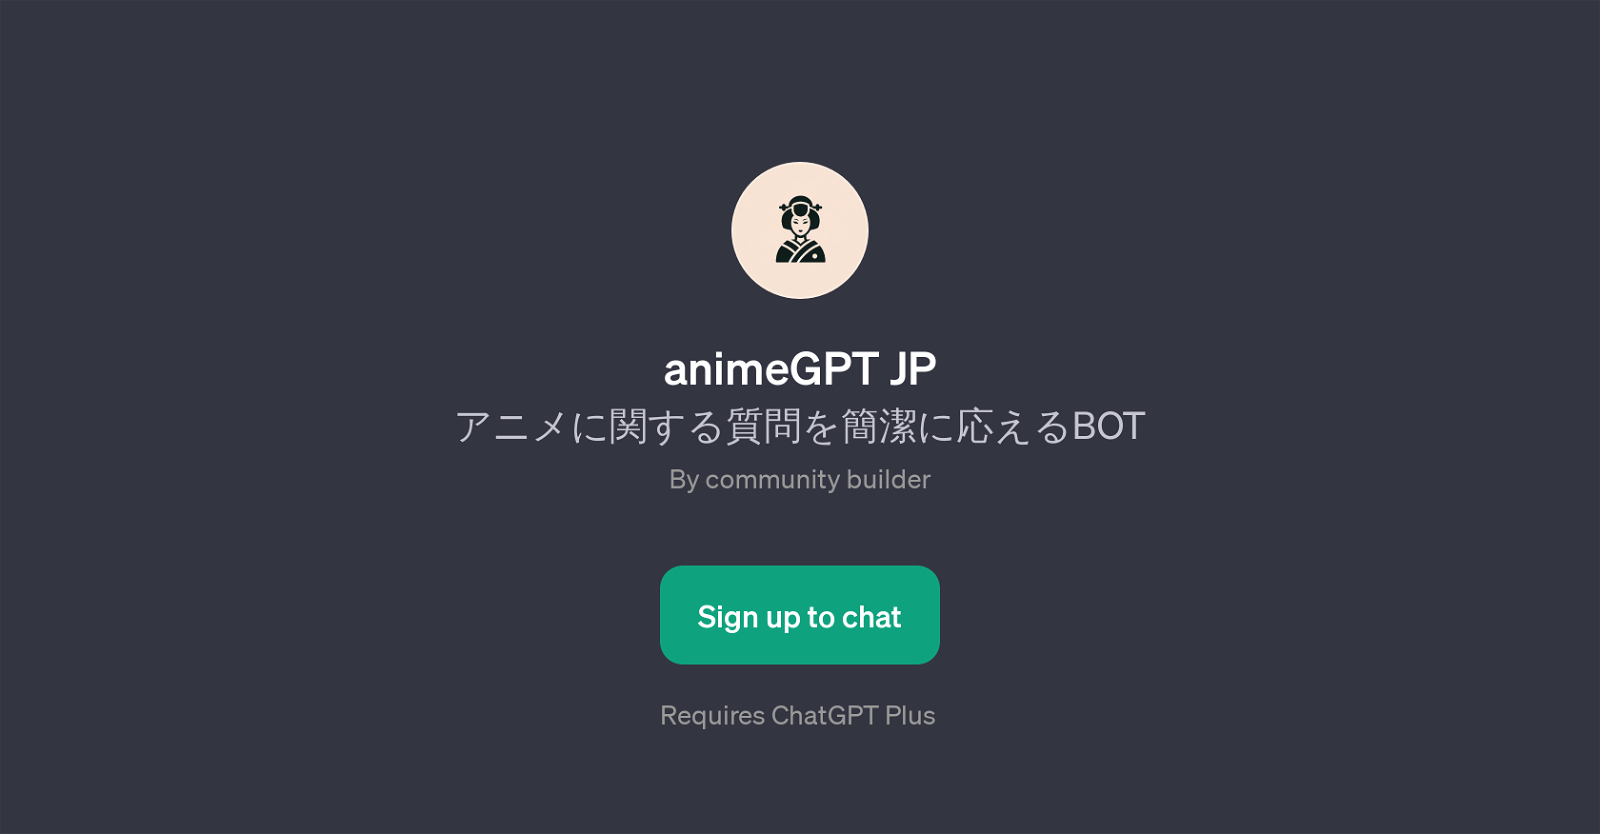 animeGPT JP website